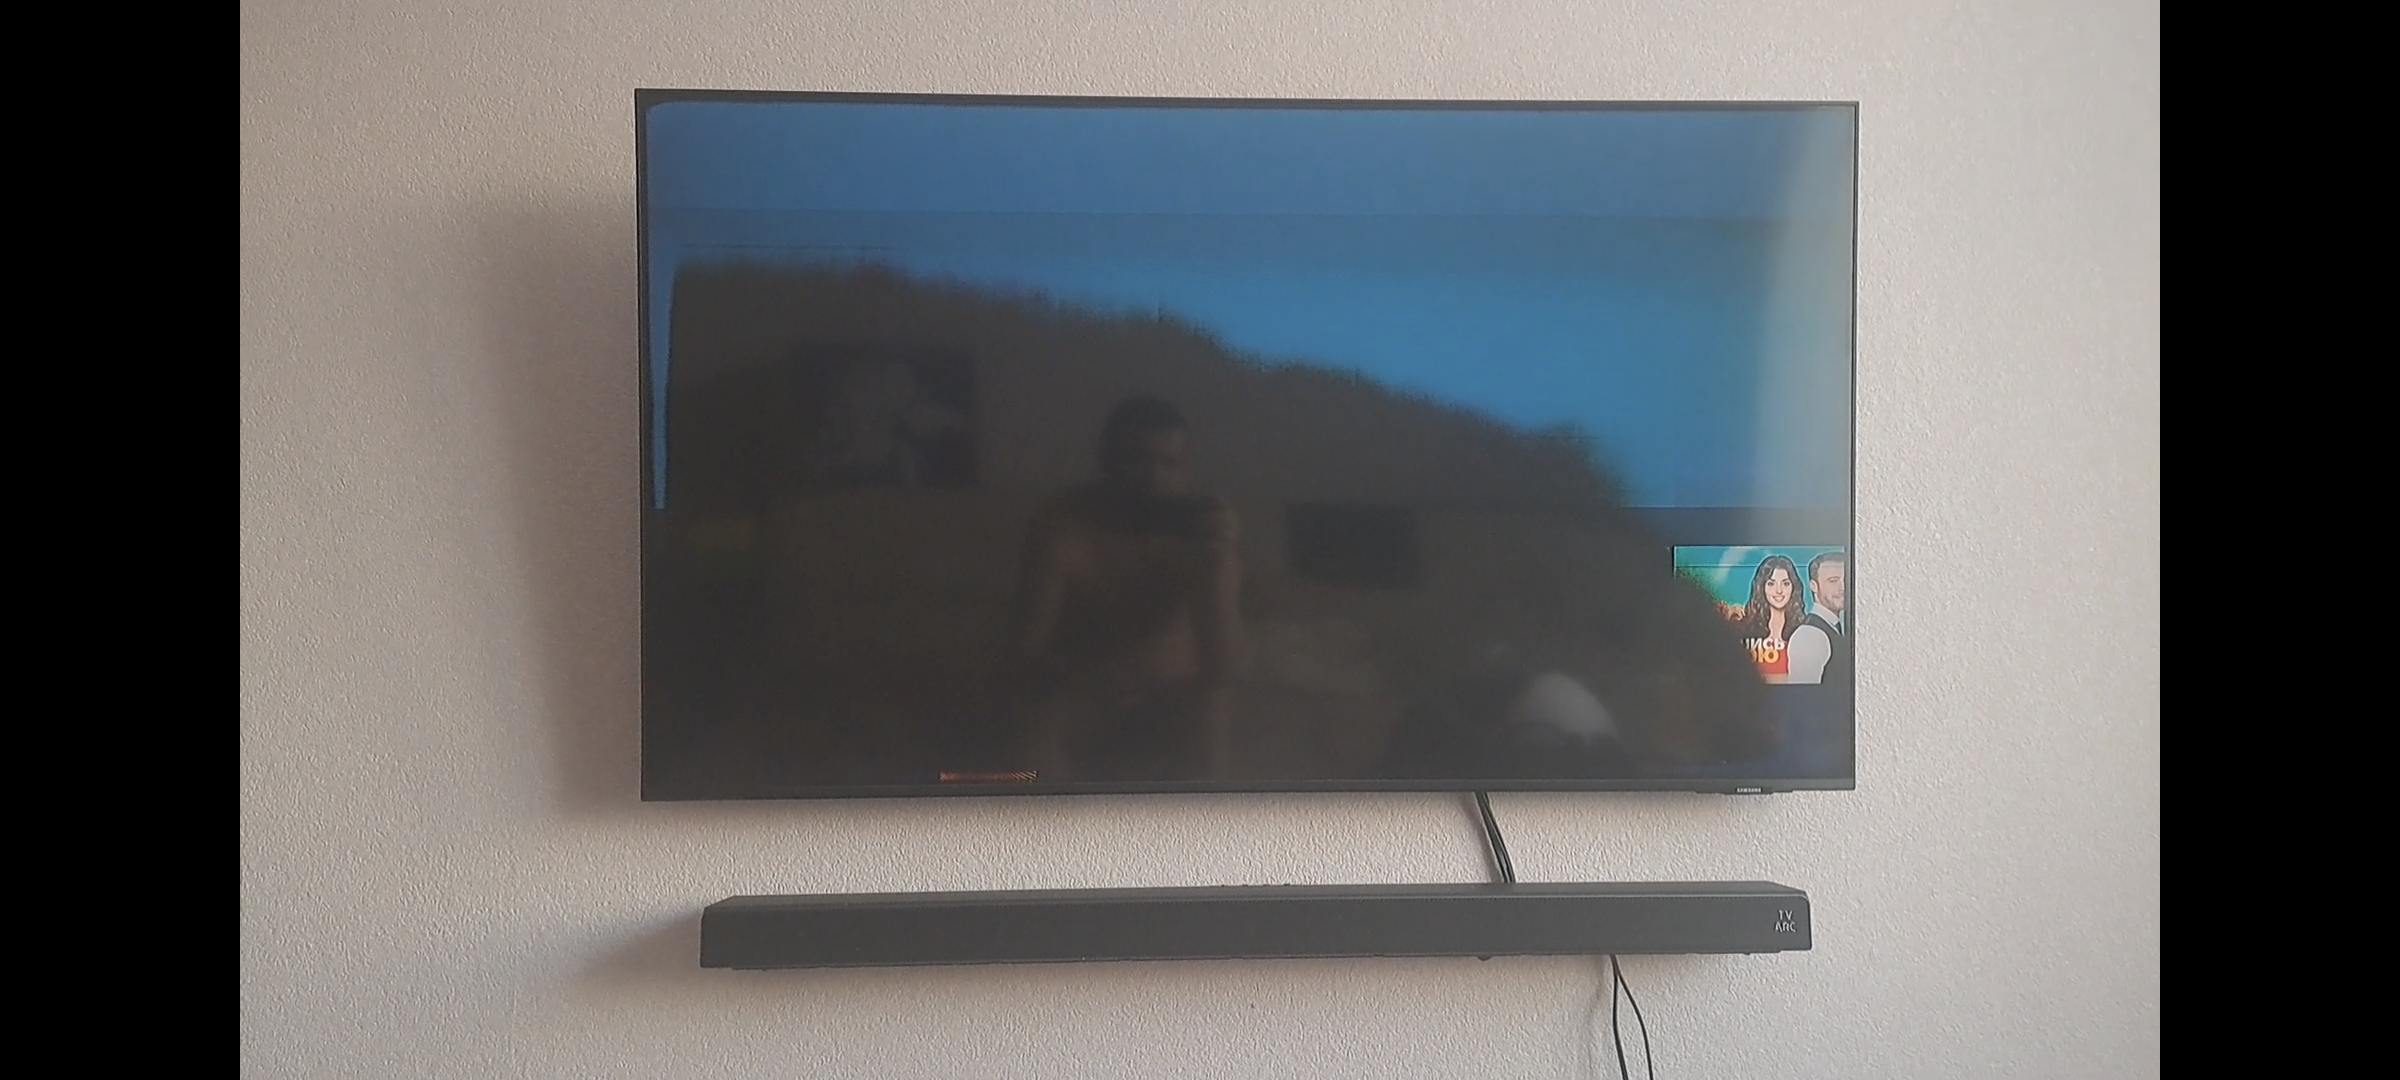 Телевизор сам перезагружается. Потемнел экран телевизора. Половина телевизора потемнела. Темнеет экран. Монитор чернеет.